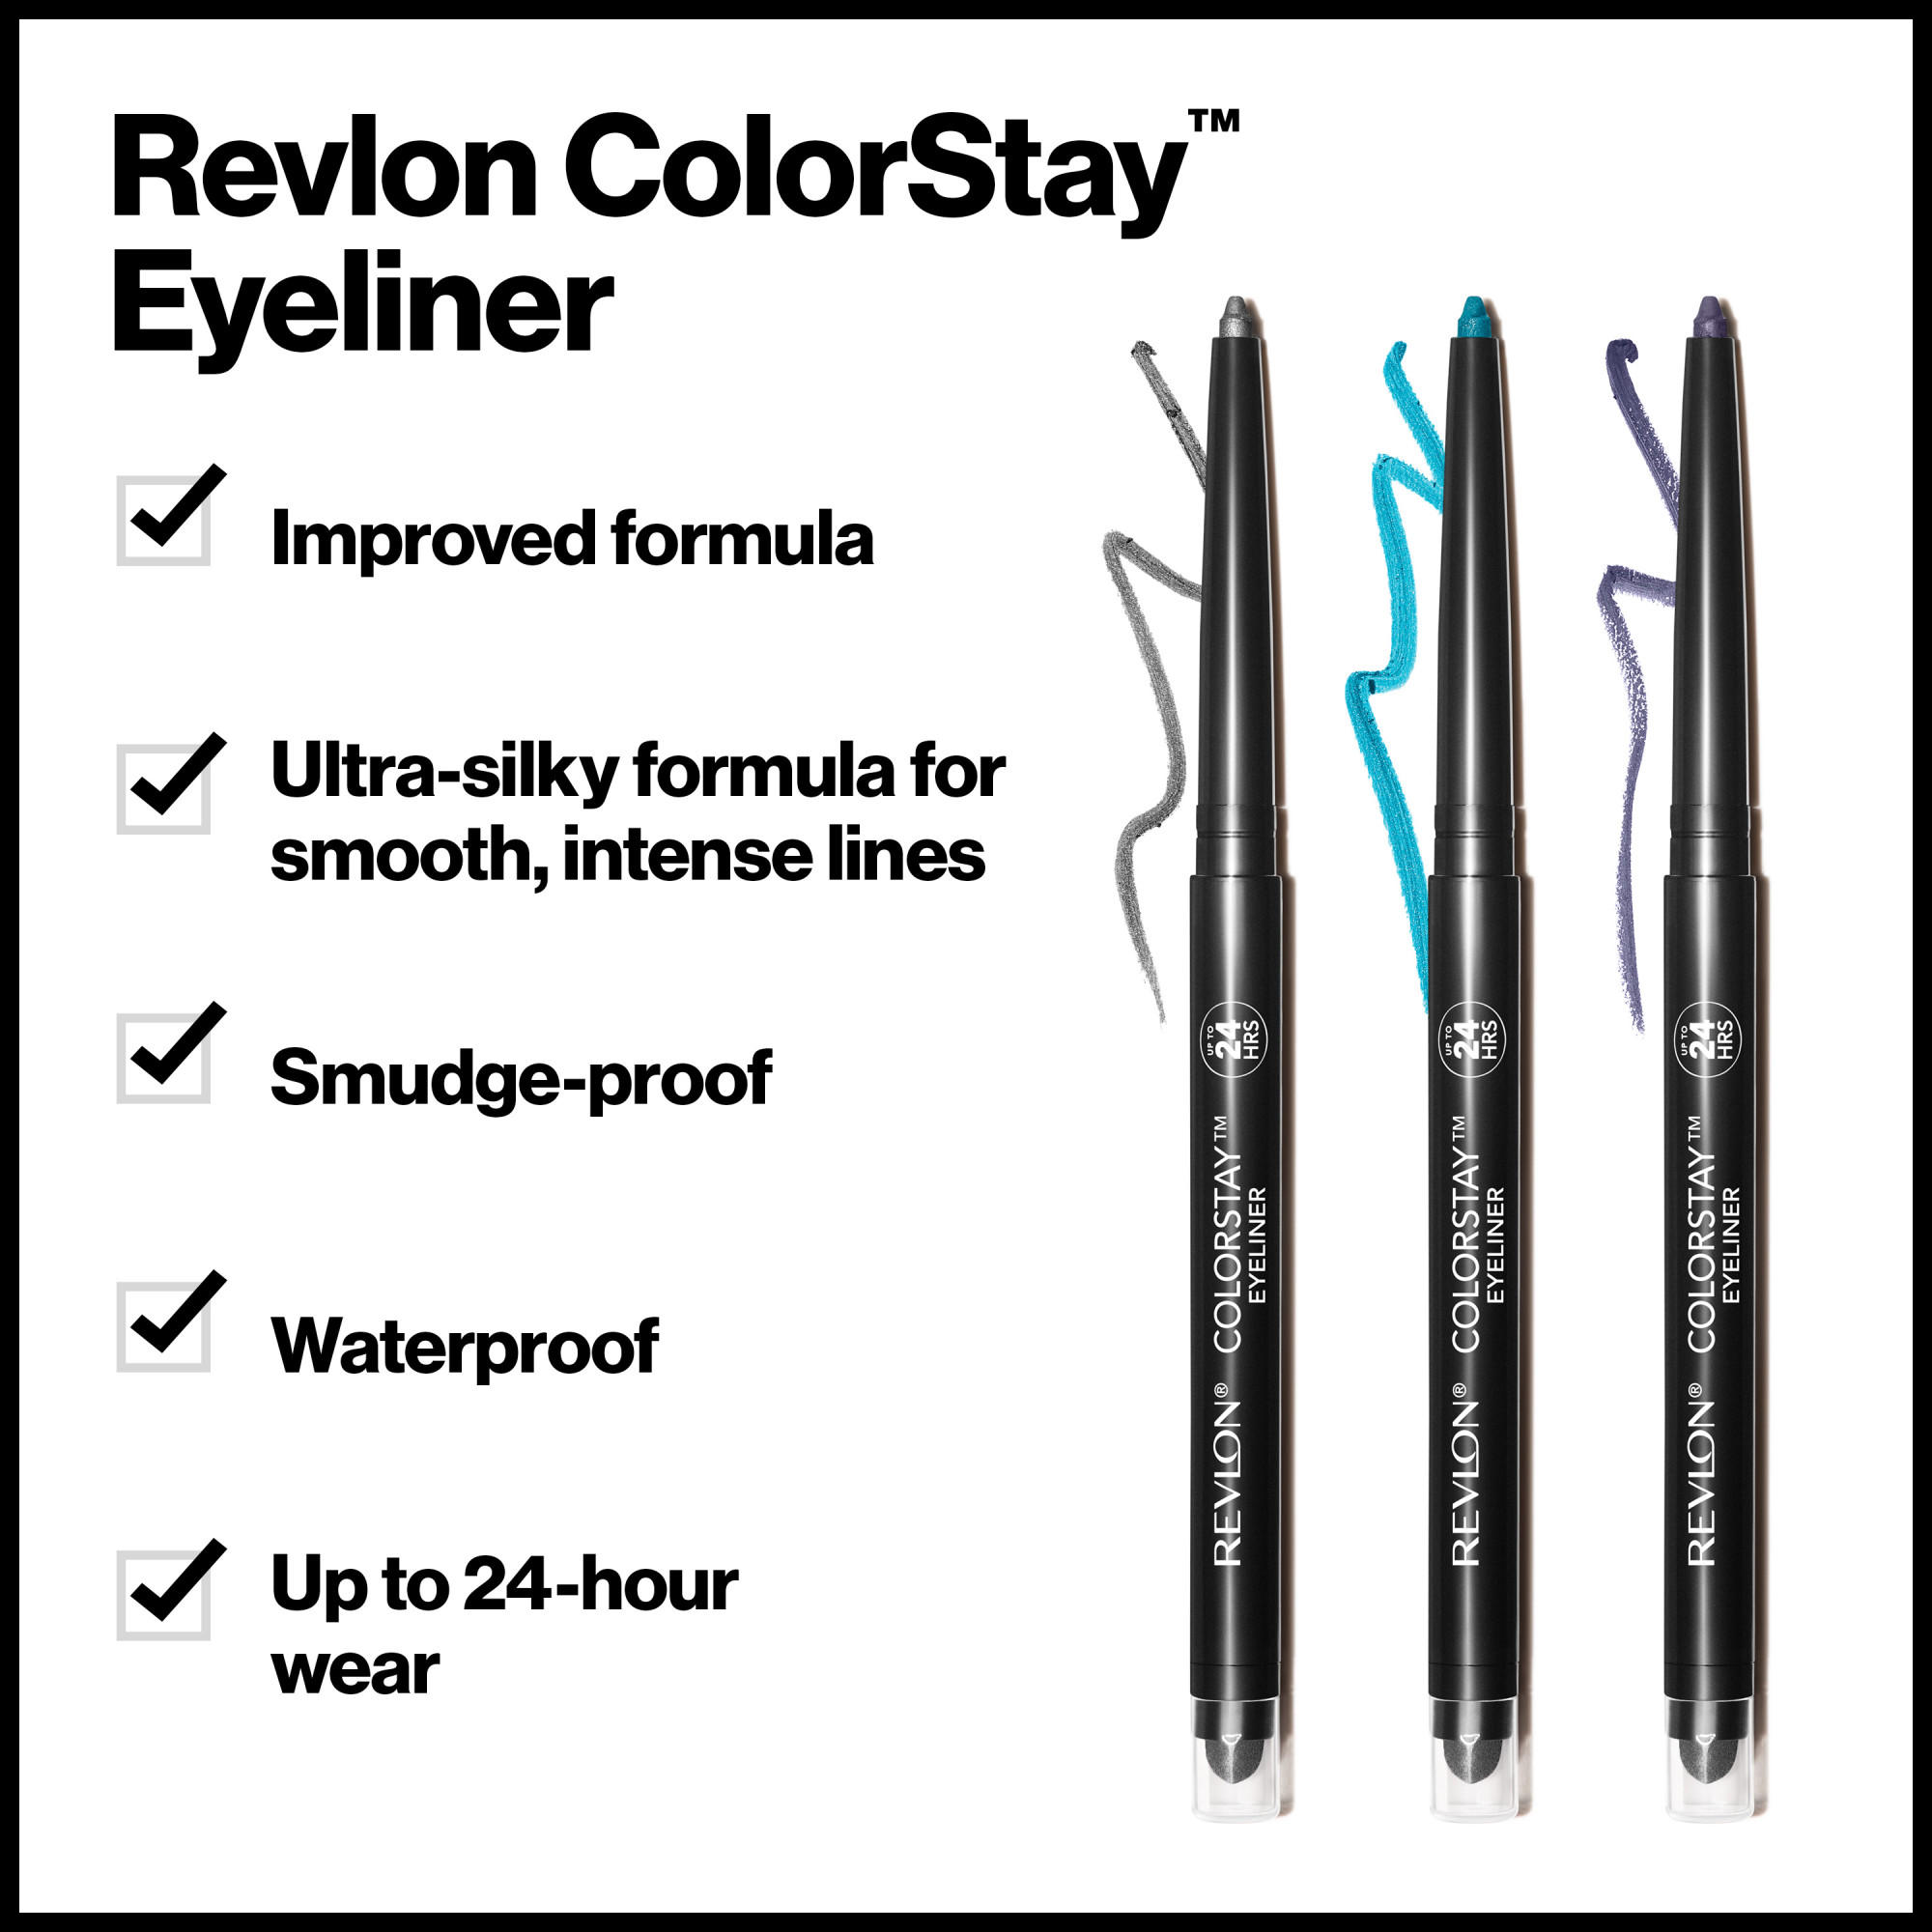 Revlon ColorStay Waterproof Eyeliner Pencil, 24HR Wear, Built-in Sharpener, 205 Sapphire, 0.01 oz - image 5 of 9